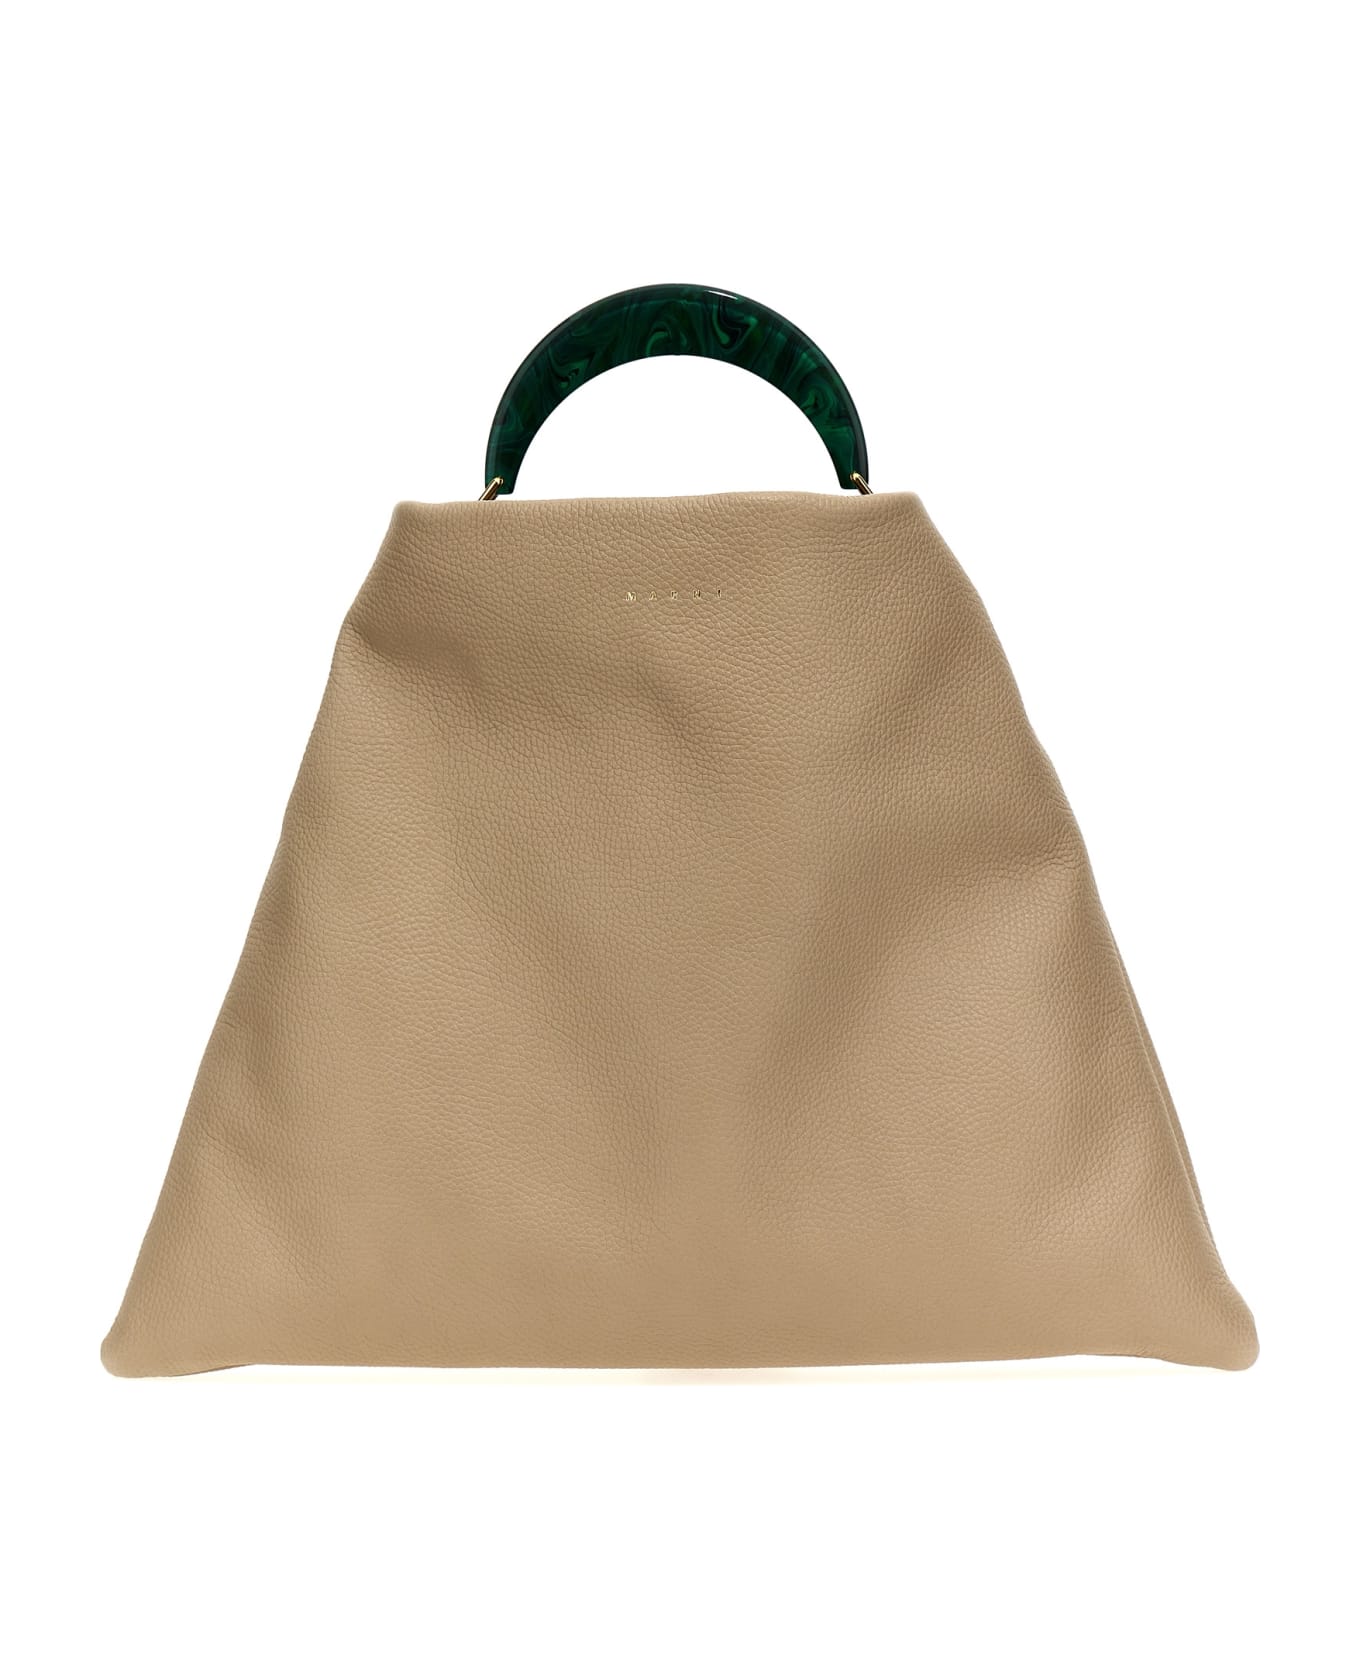 Marni 'venice Medium' Handbag - Beige トートバッグ